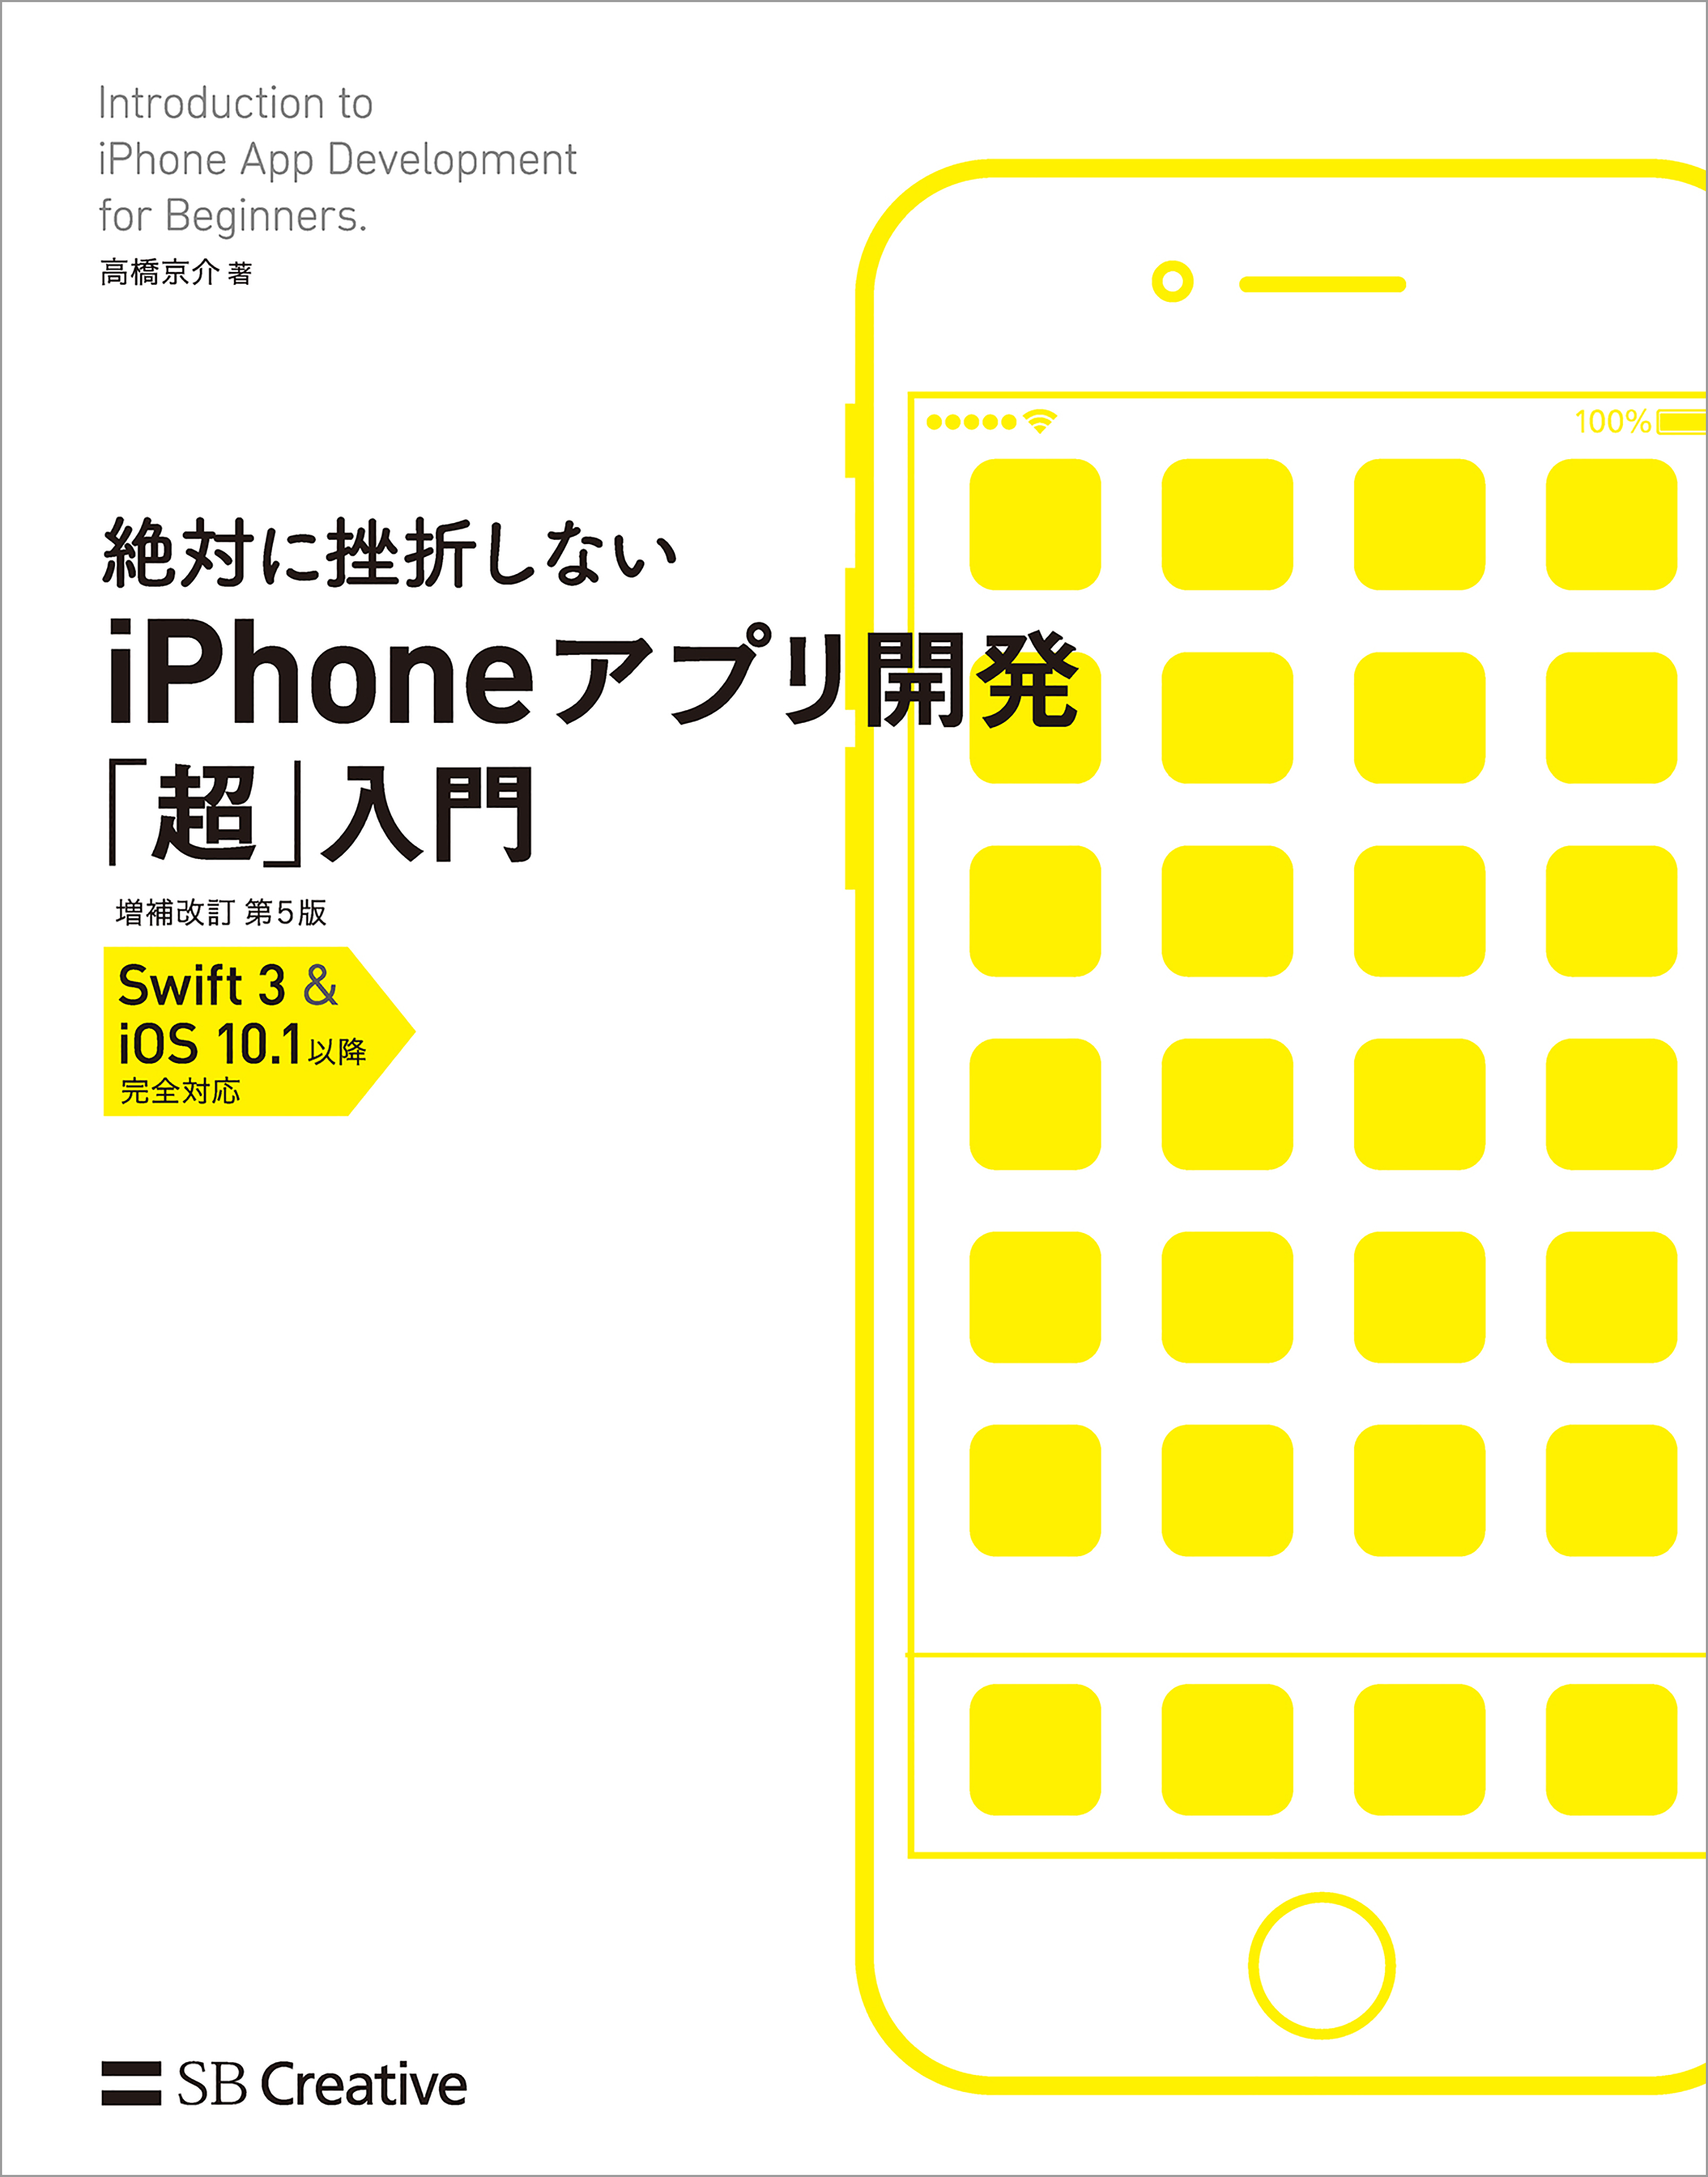 絶対に挫折しない iPhoneアプリ開発「超」入門 増補改訂第5版【Swift 3